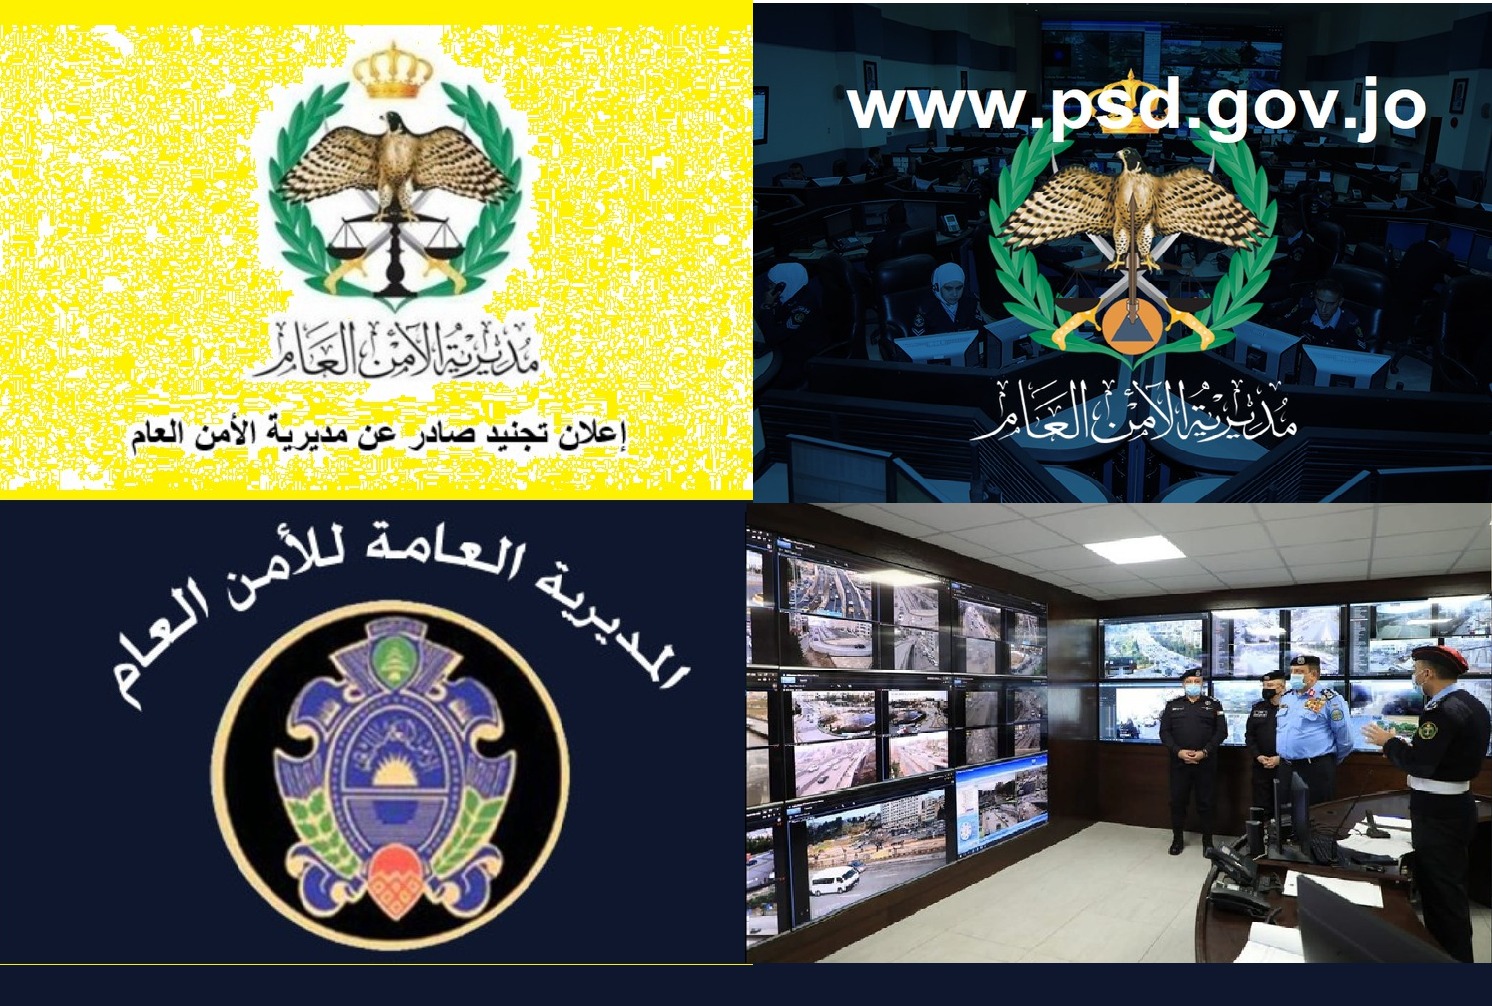 www.psd.gov.jo تجنيد مديرية الأمن العام الأردني الخدمات الإلكترونية tajneed psd gov jo